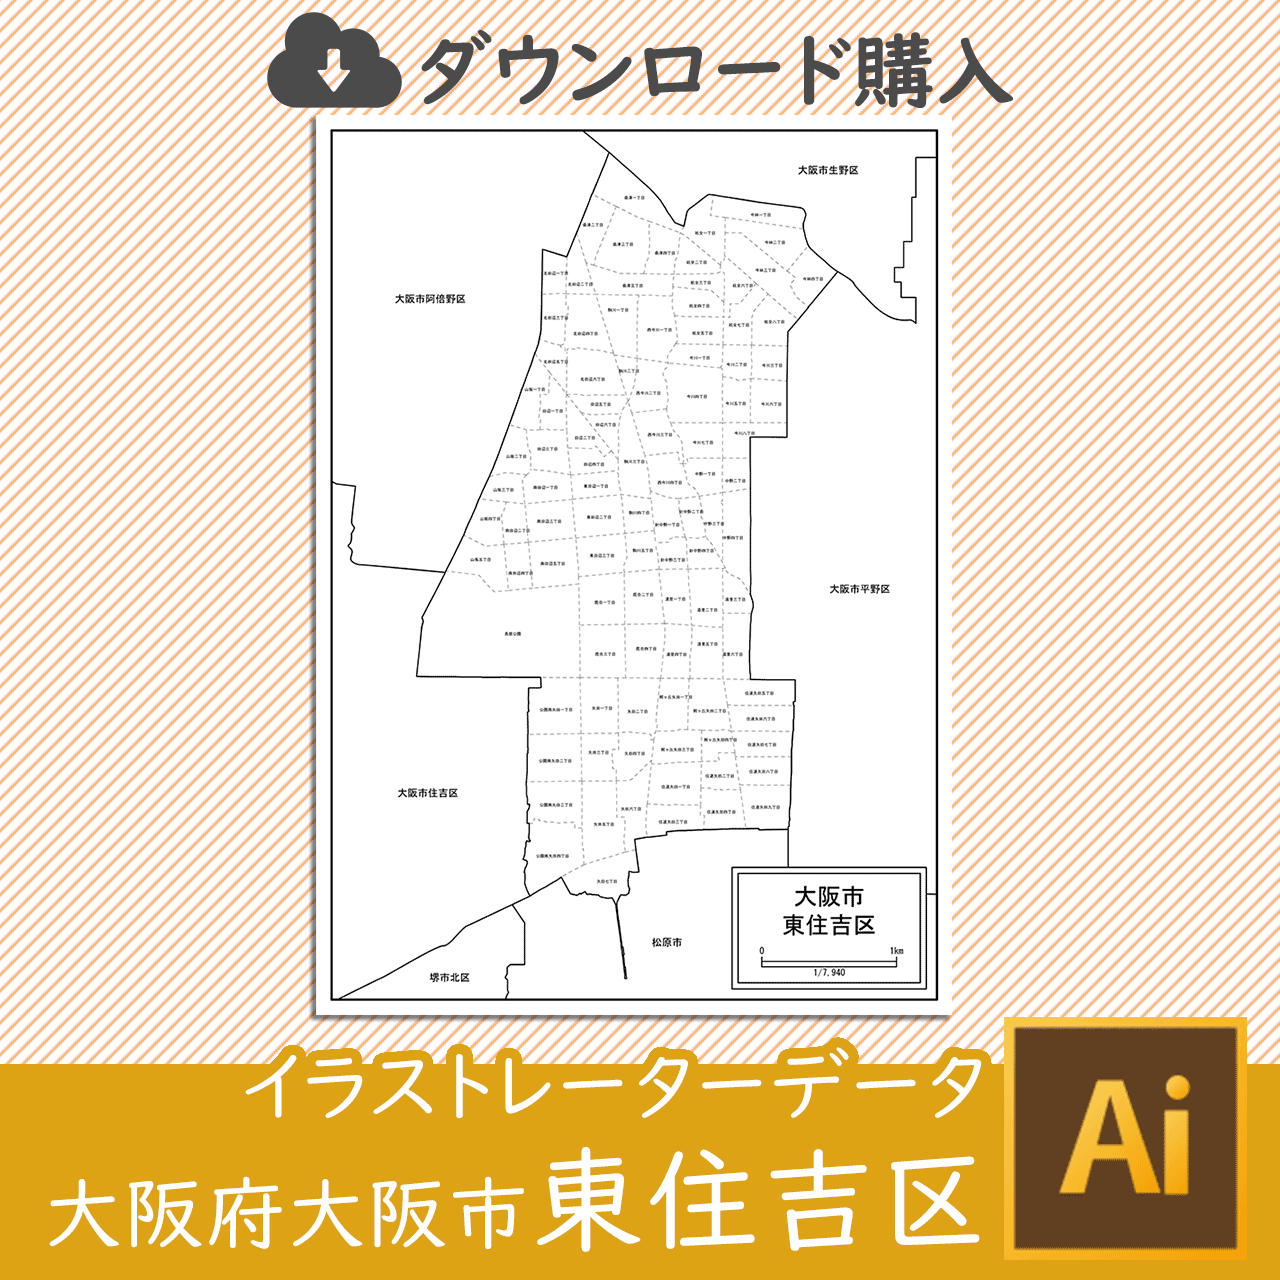 大阪市東住吉区の白地図のサムネイル画像